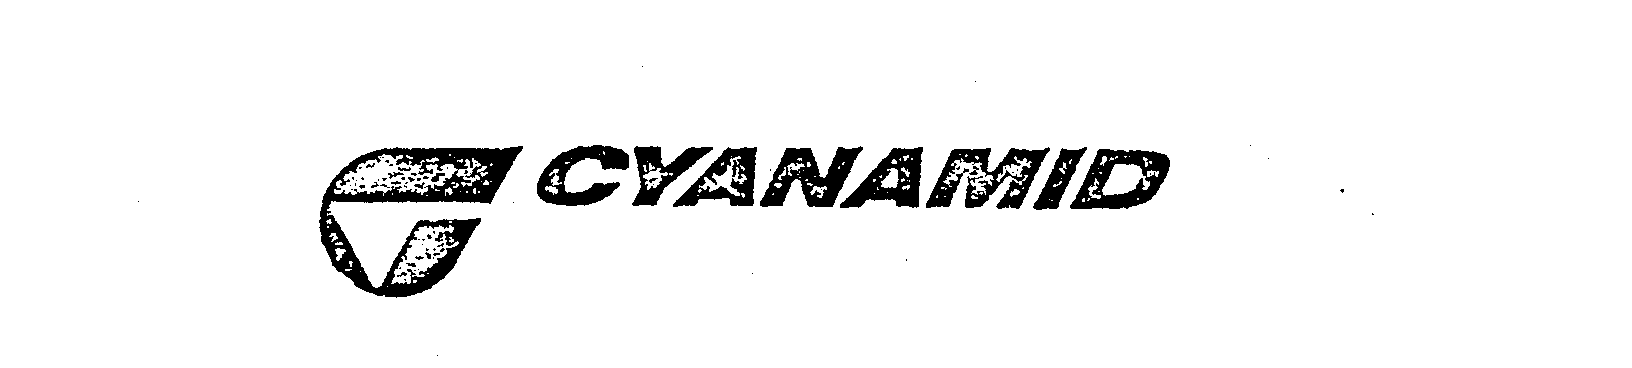 CYANAMID